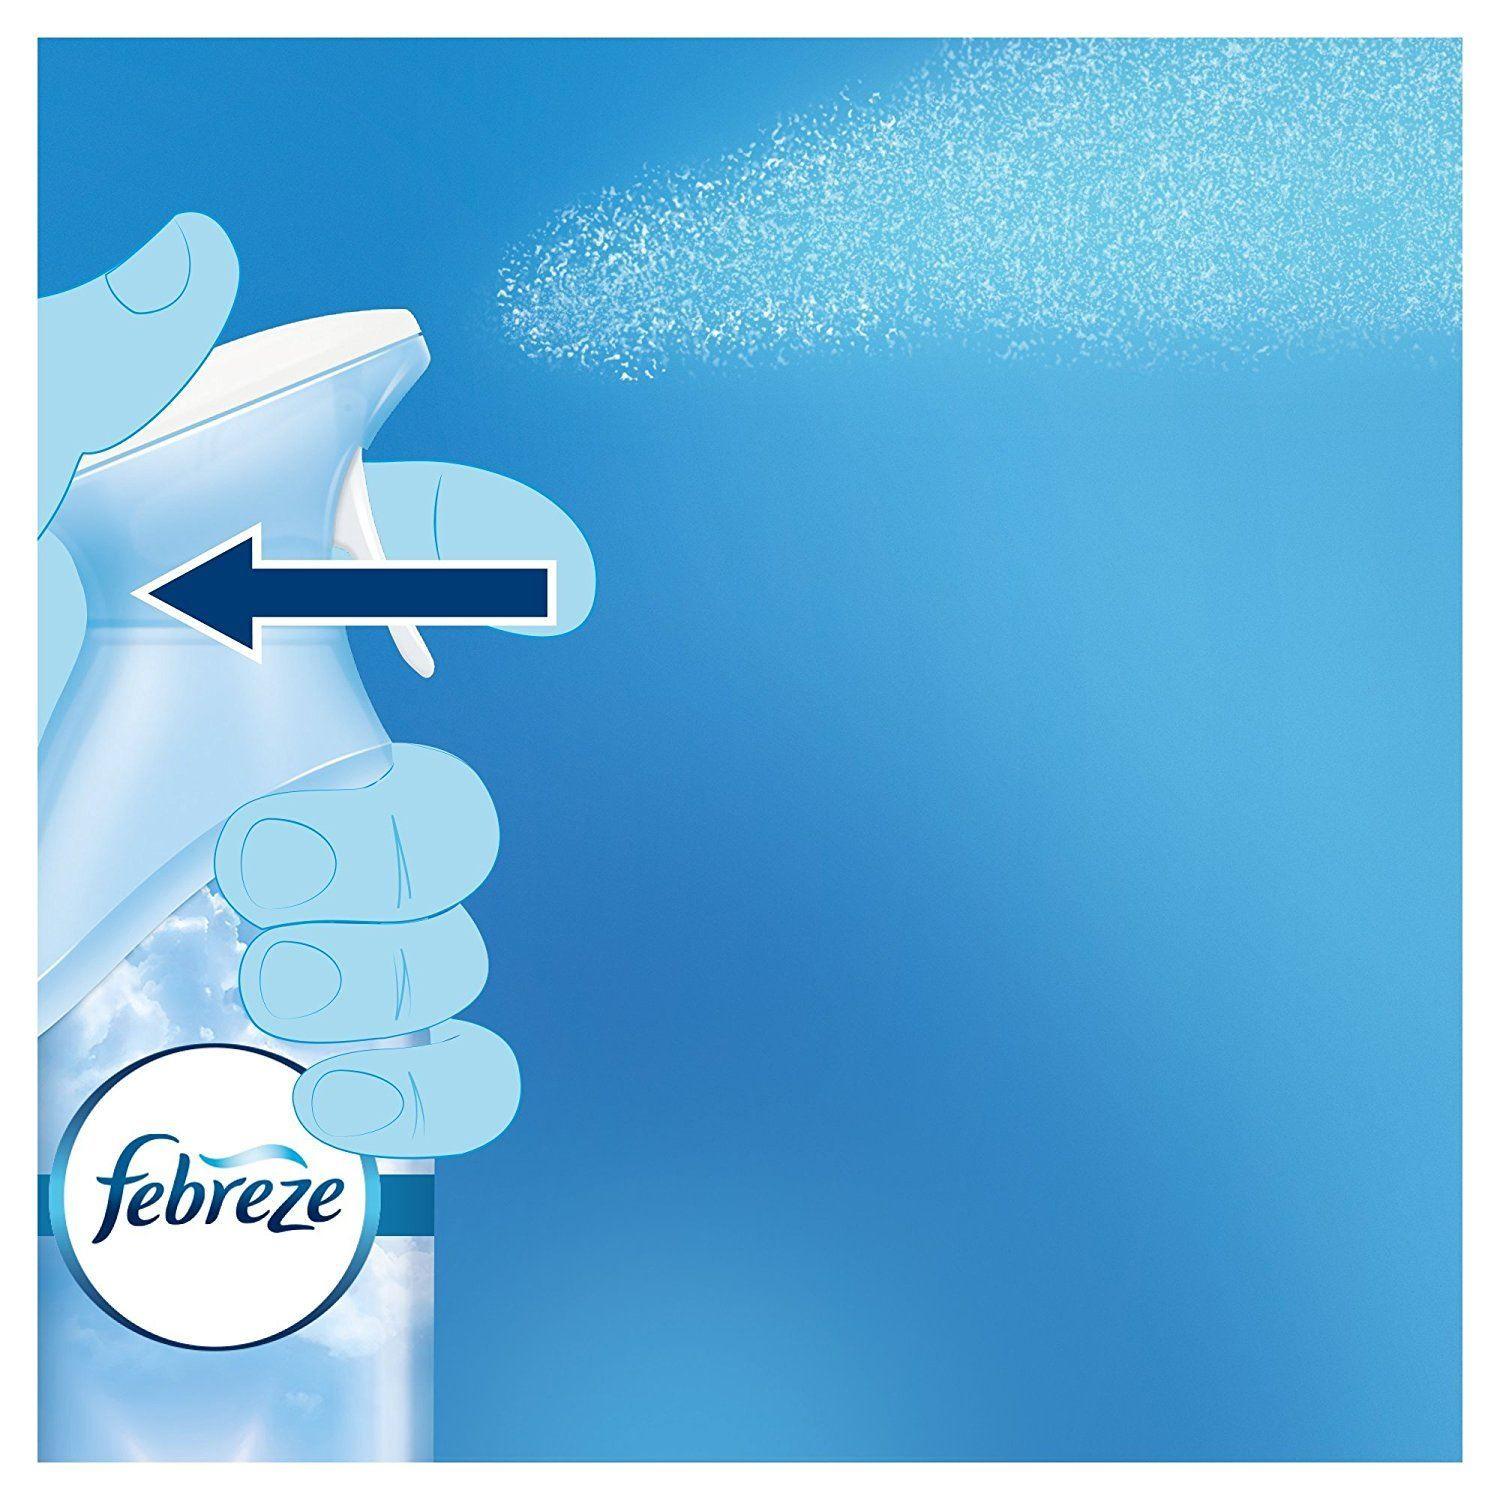 Febreze Logo - Febreze Home Air Freshener Spray Can 300ml Red Cherry Blossom ...